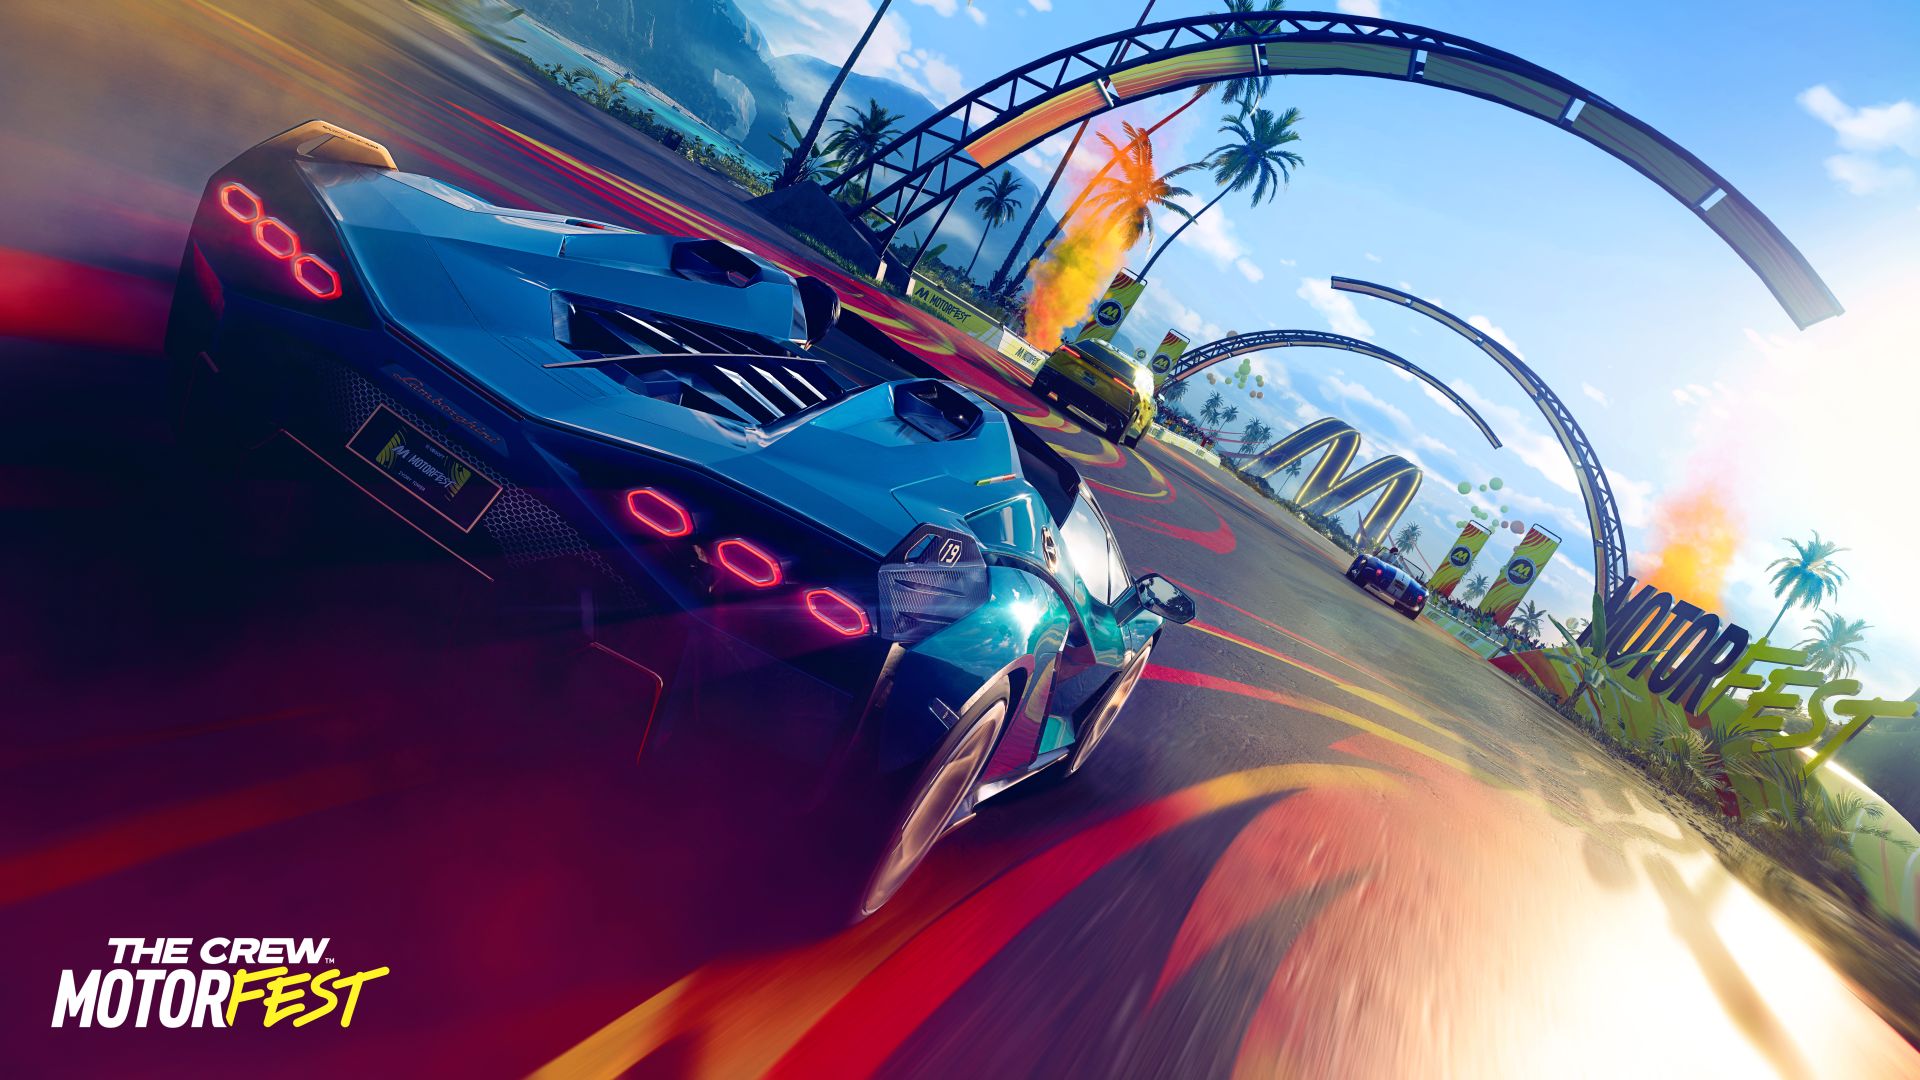 Ubisoft bekräftar releasedatum för The Crew Motorfest - äventyrsracet släpps den 14 september